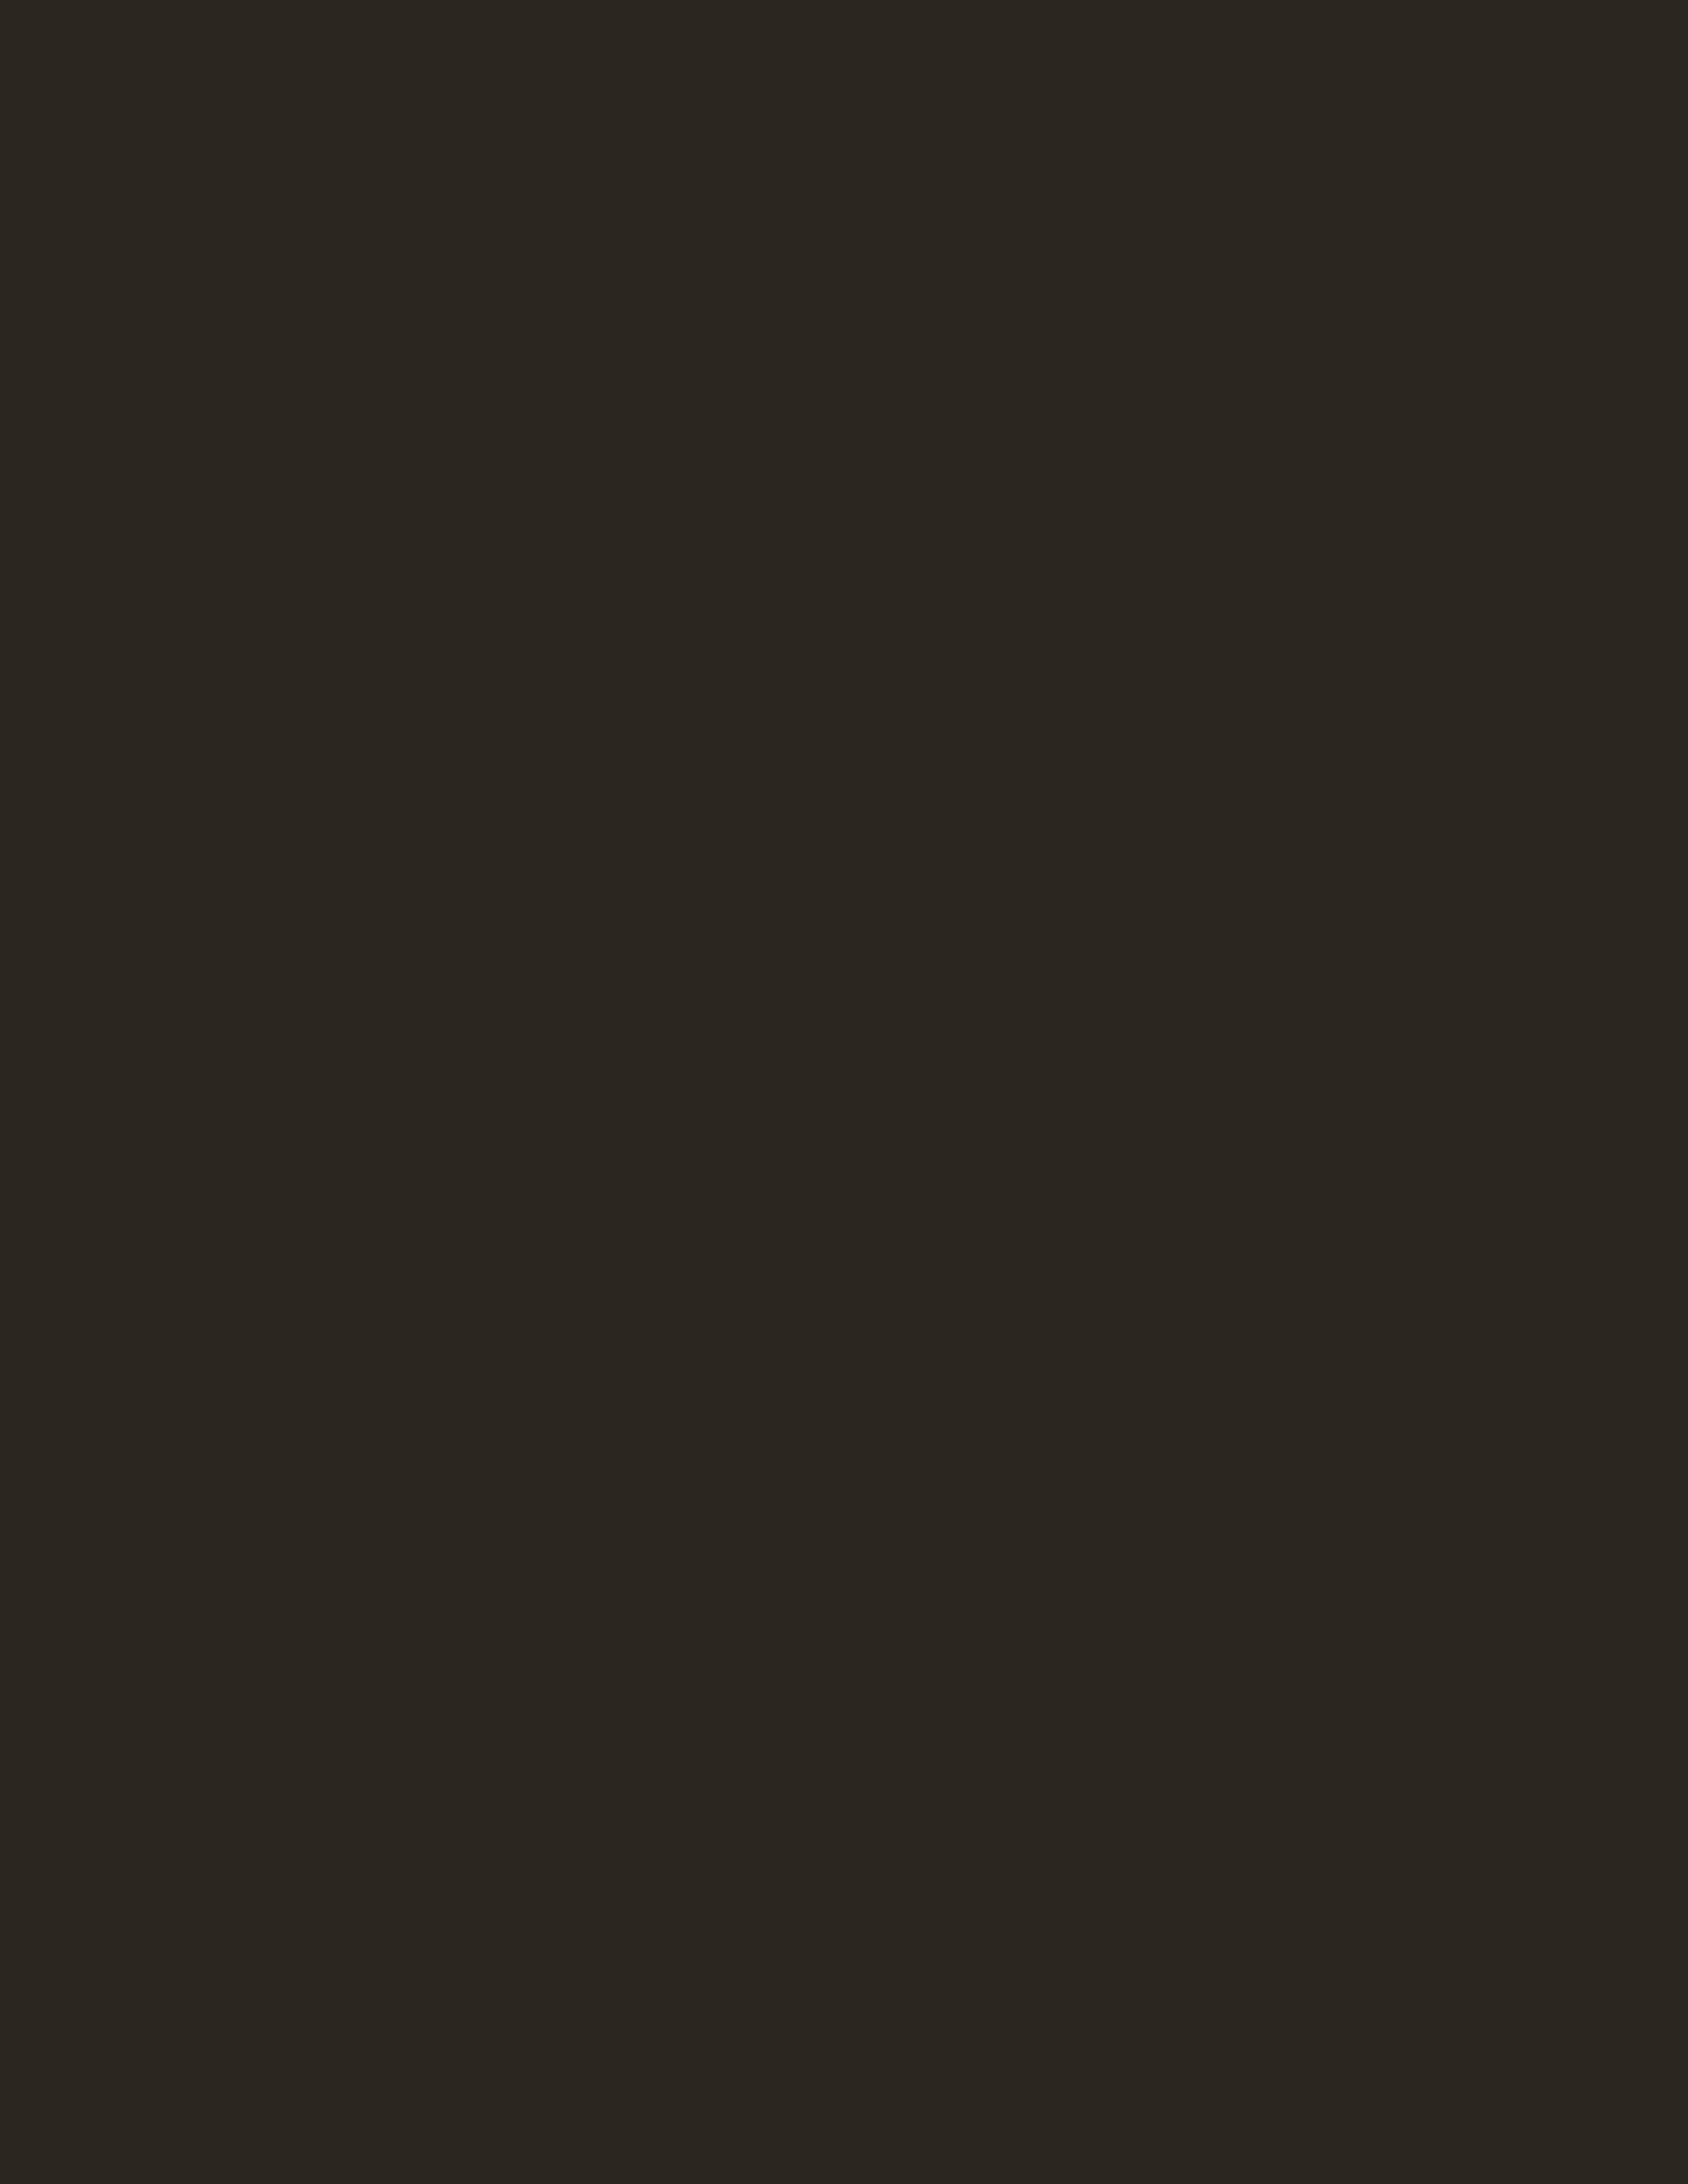 Василий Тропинин. Портрет украинского крестьянина. Конец 1830-х — начало 1840-х. Киевский национальный музей русского искусства, Украина